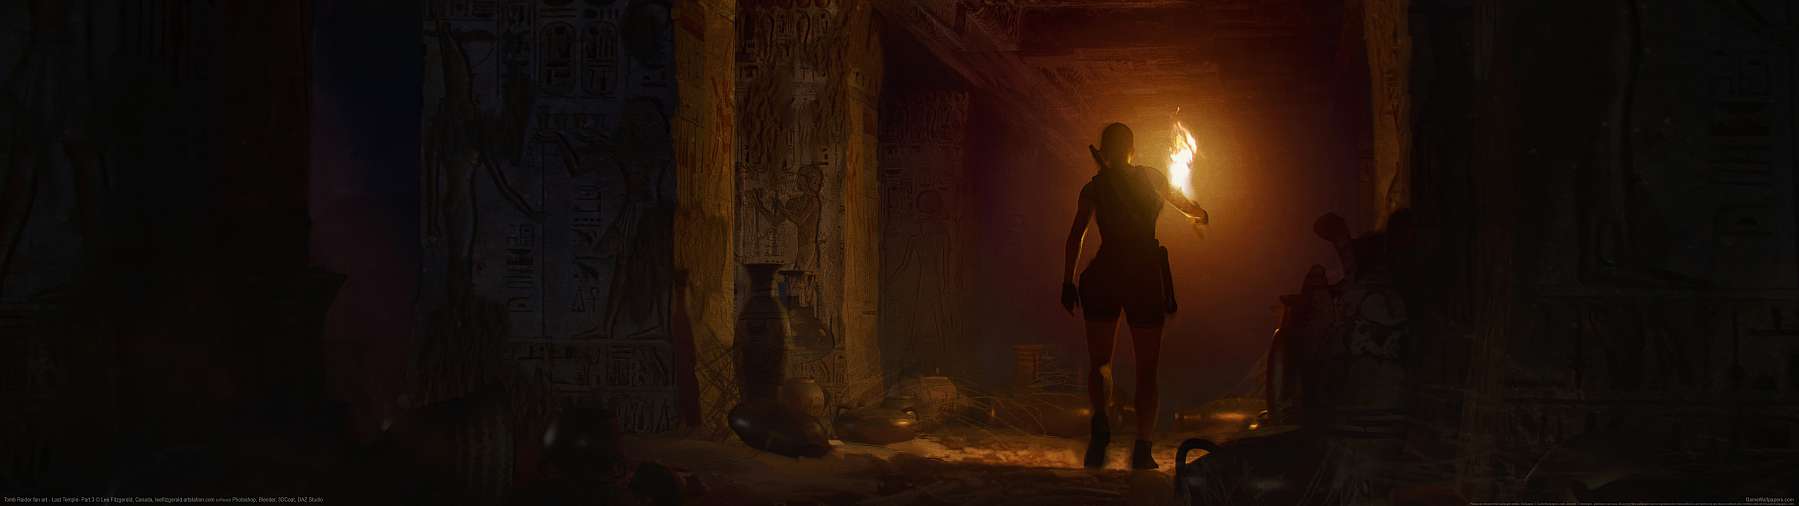 Tomb Raider fan art superwide achtergrond 11